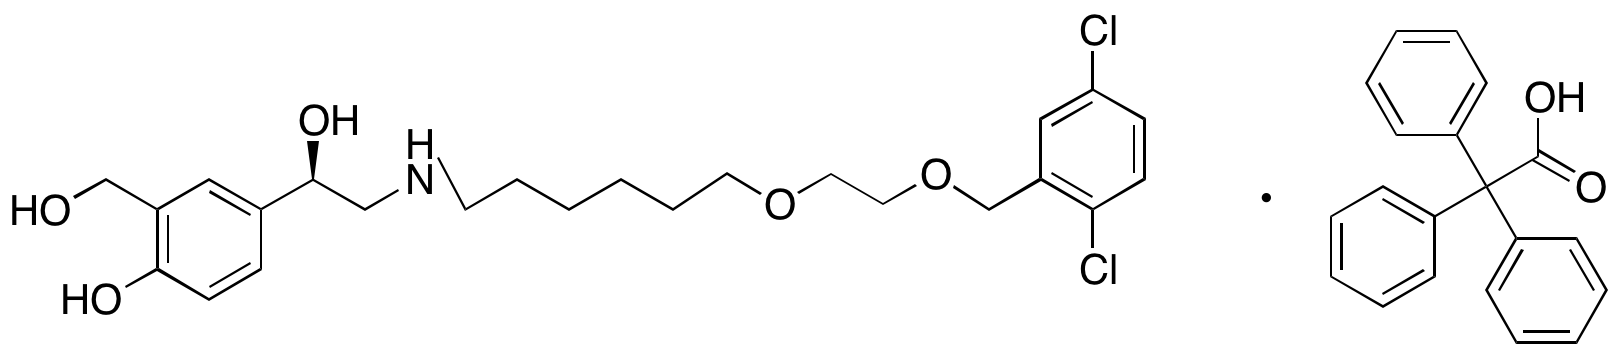 (R)-4-(2-((6-(2-((2,5-Dichlorobenzyl)oxy)ethoxy)hexyl)amino)-1-hydroxyethyl)-2-(hydroxymethyl)phenol 2,2,2-Triphenylacetate